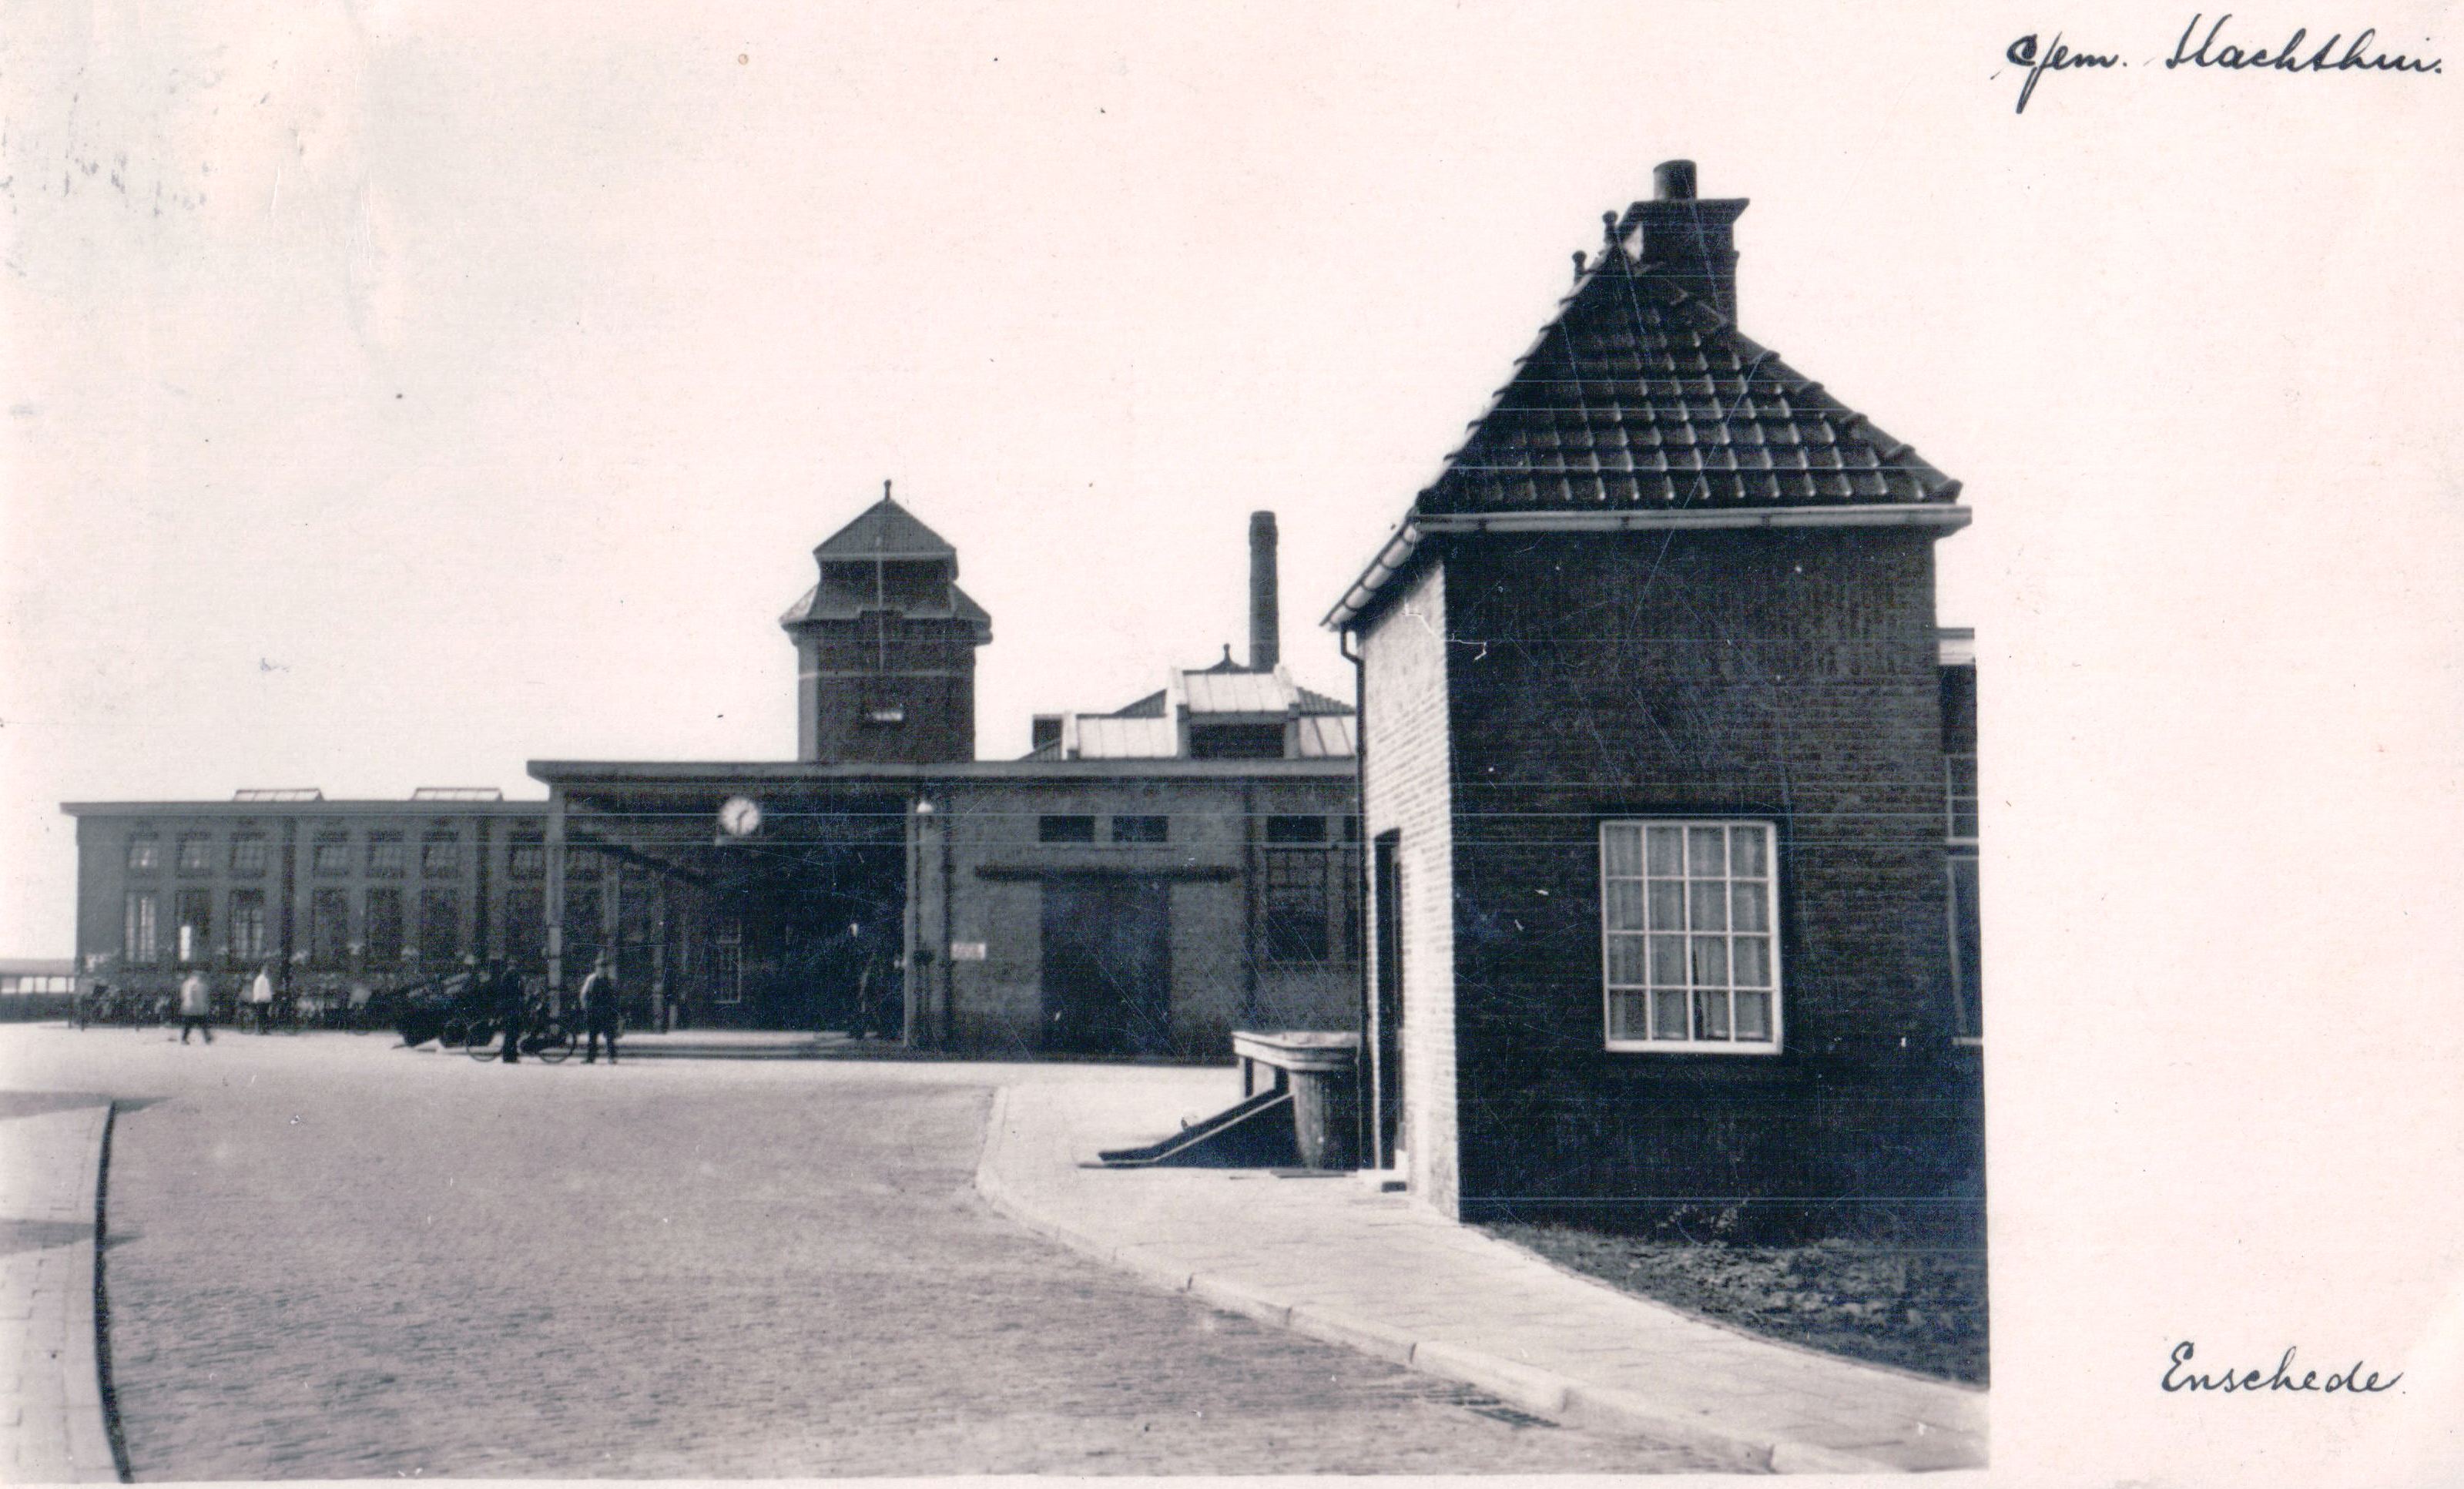 Slachthuis-1933-7ea101a9.jpg